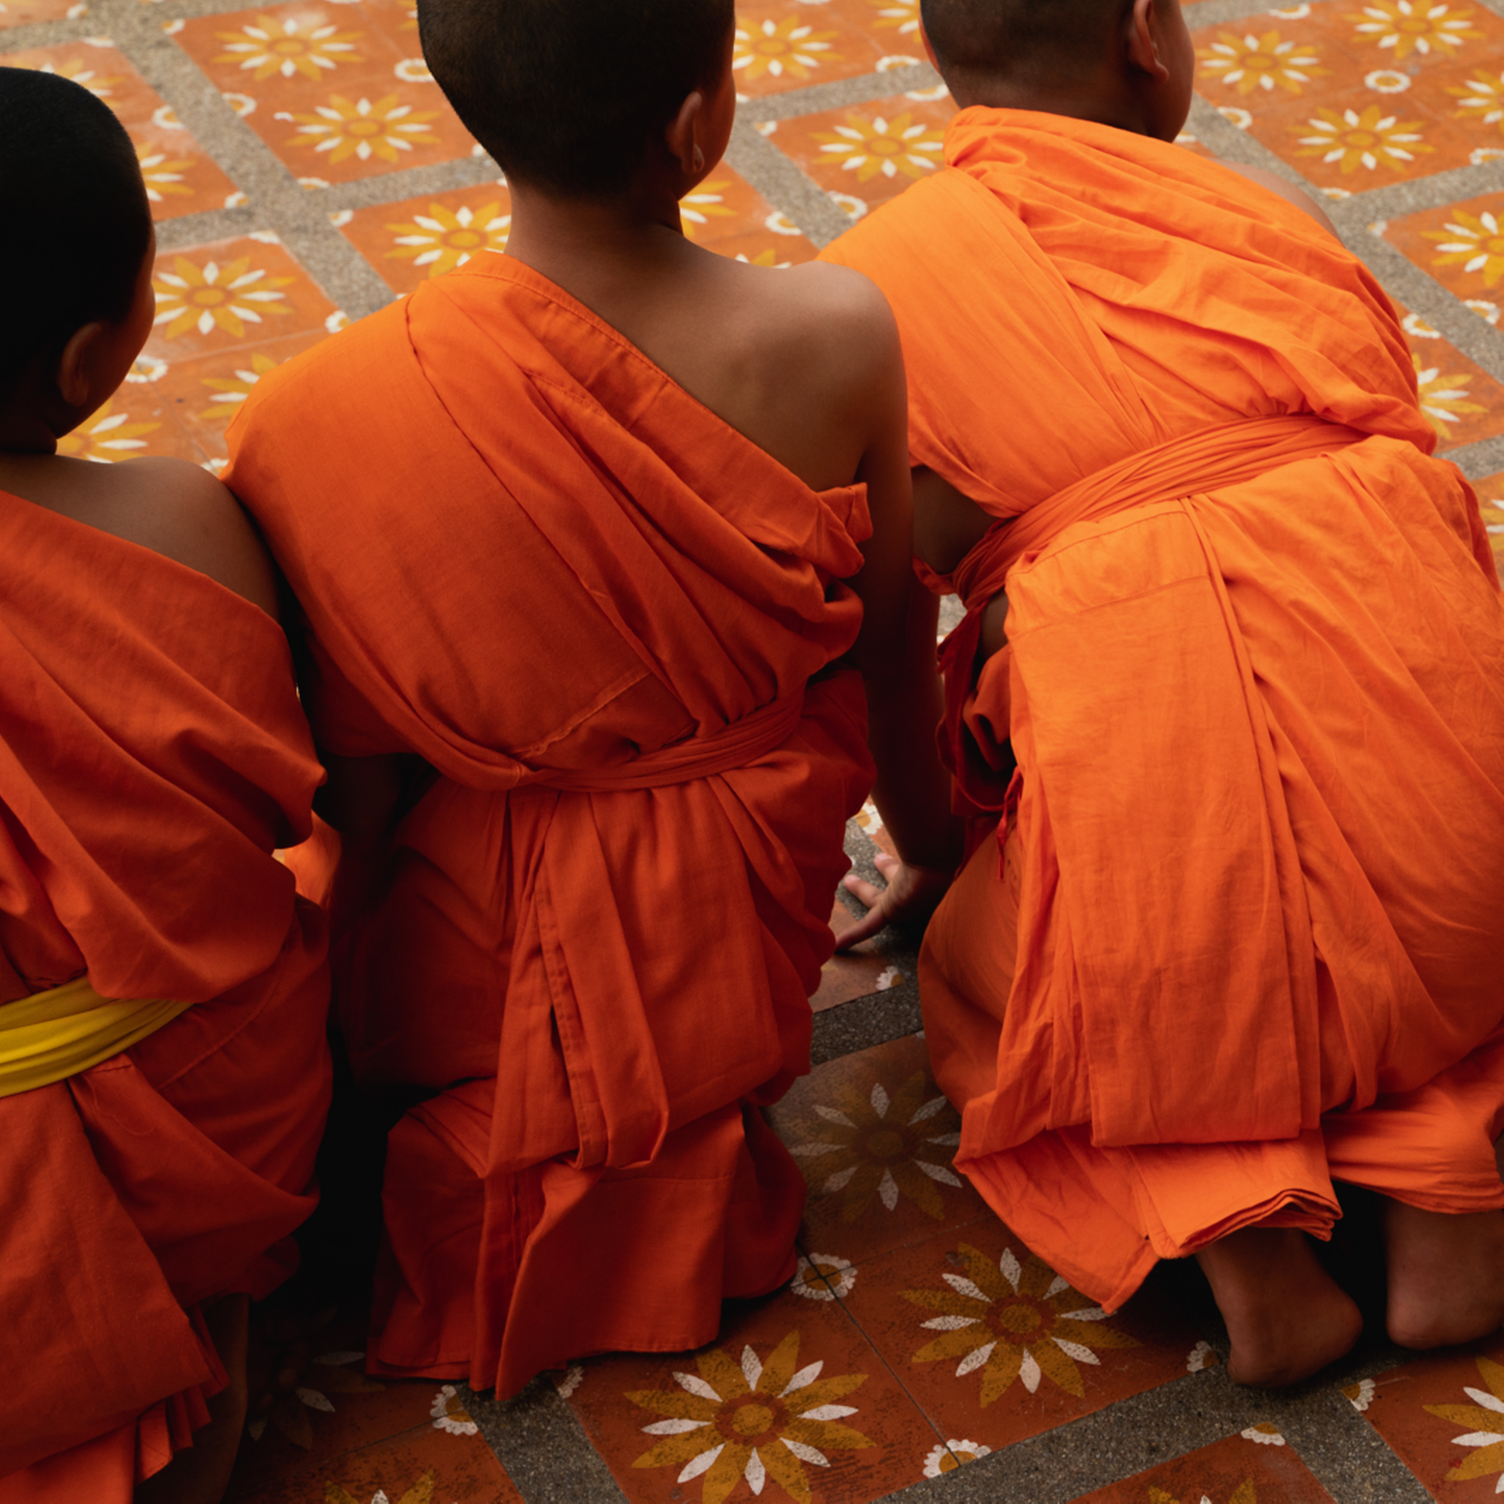 Gruppen junger thailändischer Mönche von hinten in safranfarbenen Roben